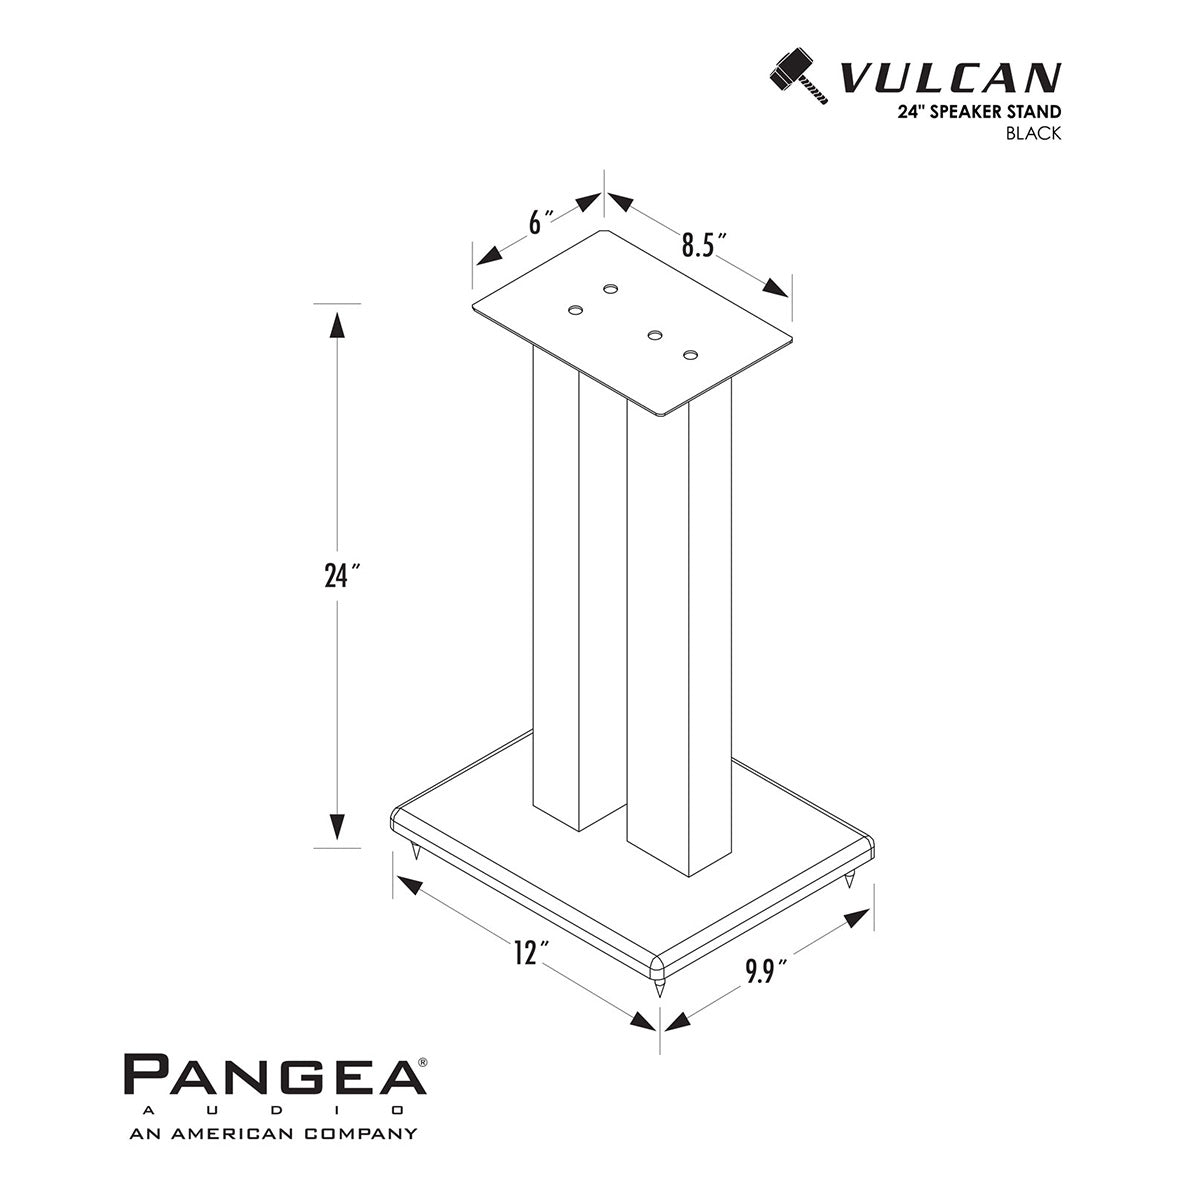 Pangea Audio DS-200 24" Steel Bookshelf Speaker Stands - Pair